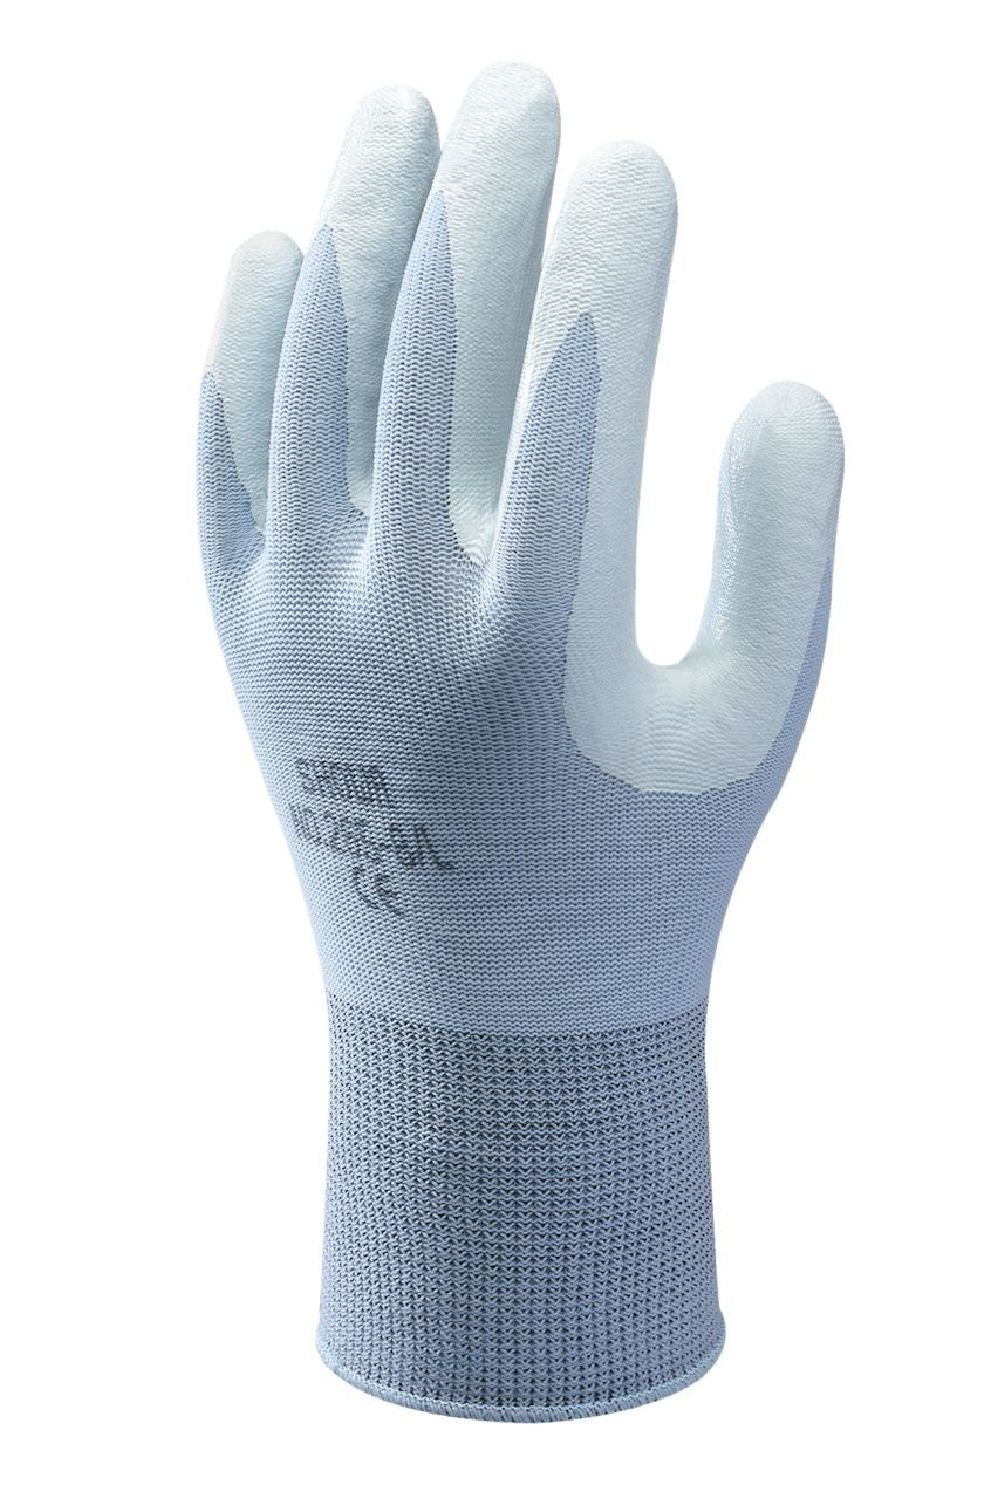 Handschuhe SHOWA 265 hellblau (ergonomisch und nahtlos)